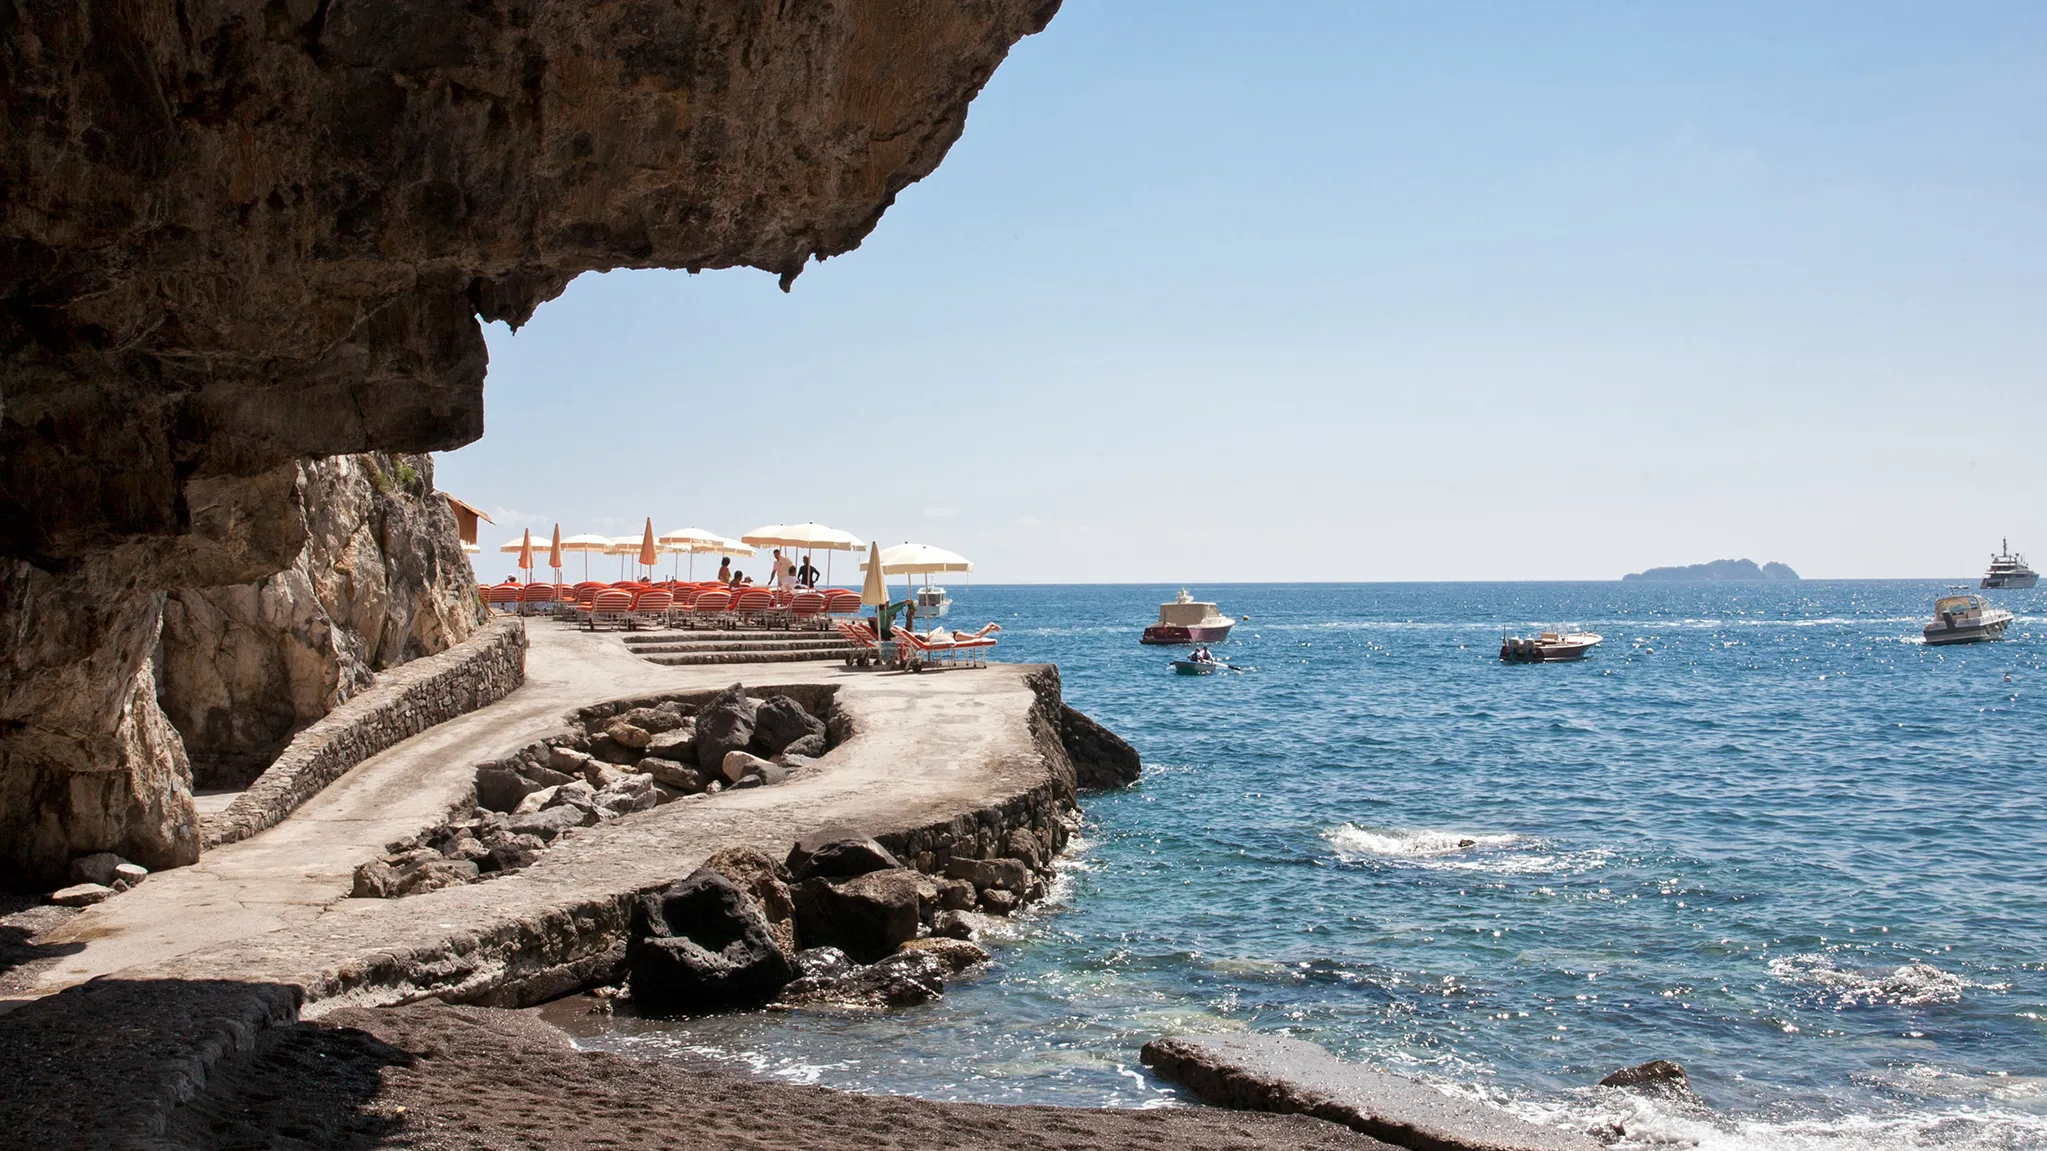 The dramatic cliffs on the Amalfi coast, featuring Il San Pietro Di Positano Hotel